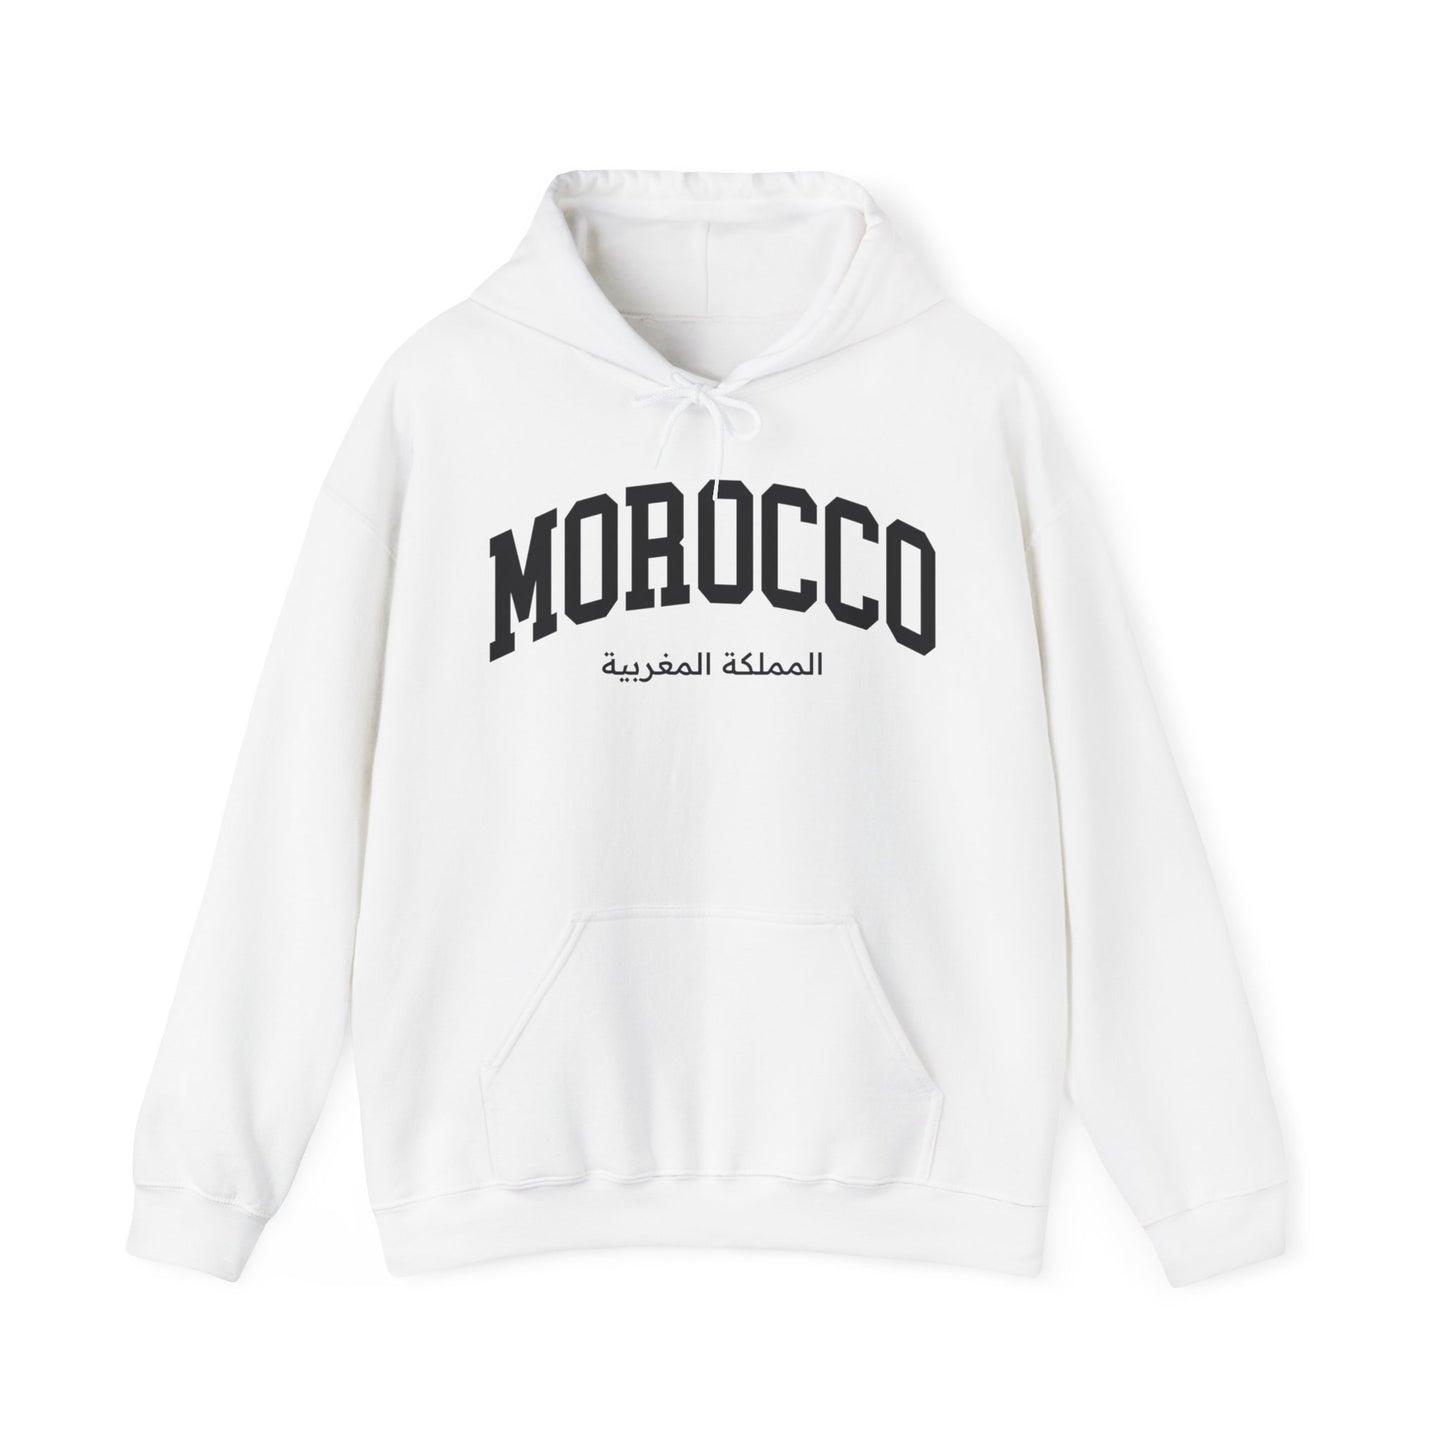 Morocco Hoodie